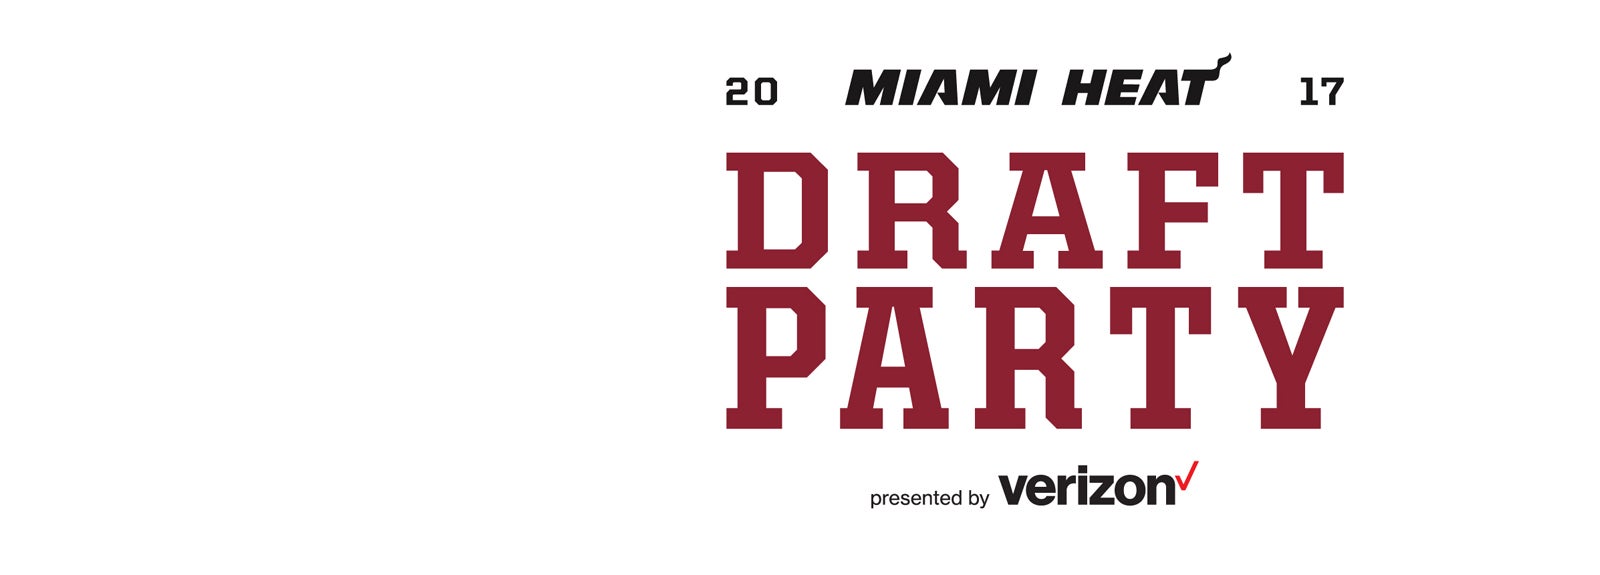 2017 Miami HEAT Draft Party